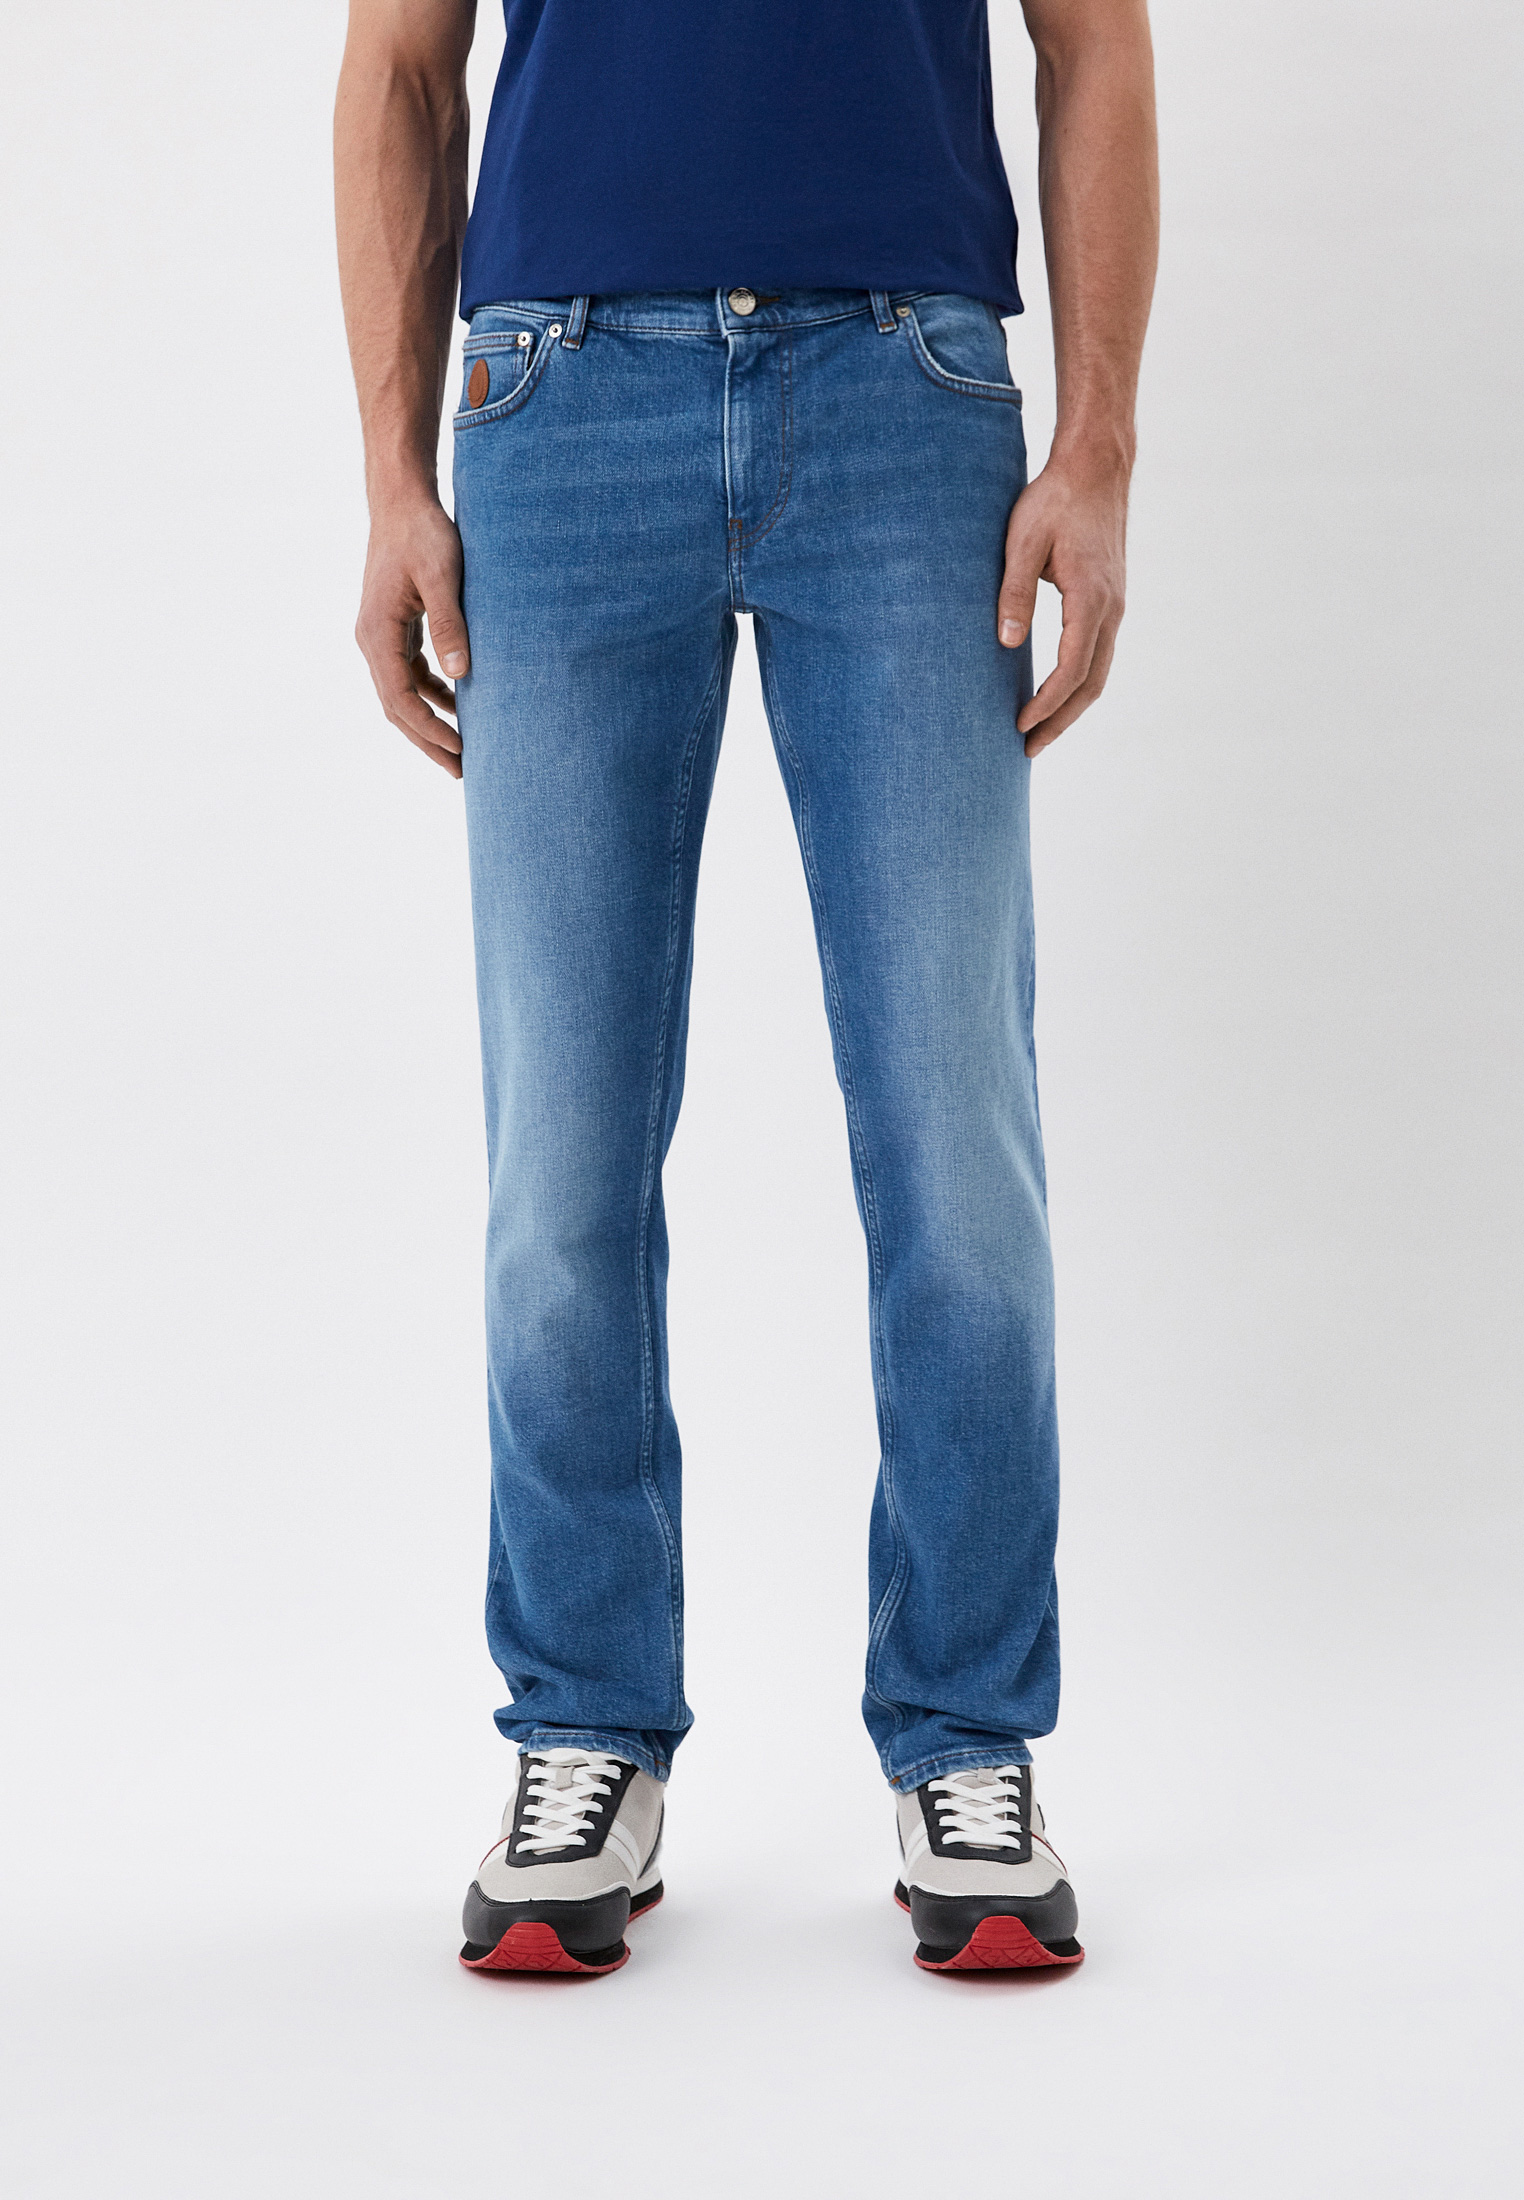 Мужские зауженные джинсы Trussardi (Труссарди) 52J00000-1T005803: изображение 1